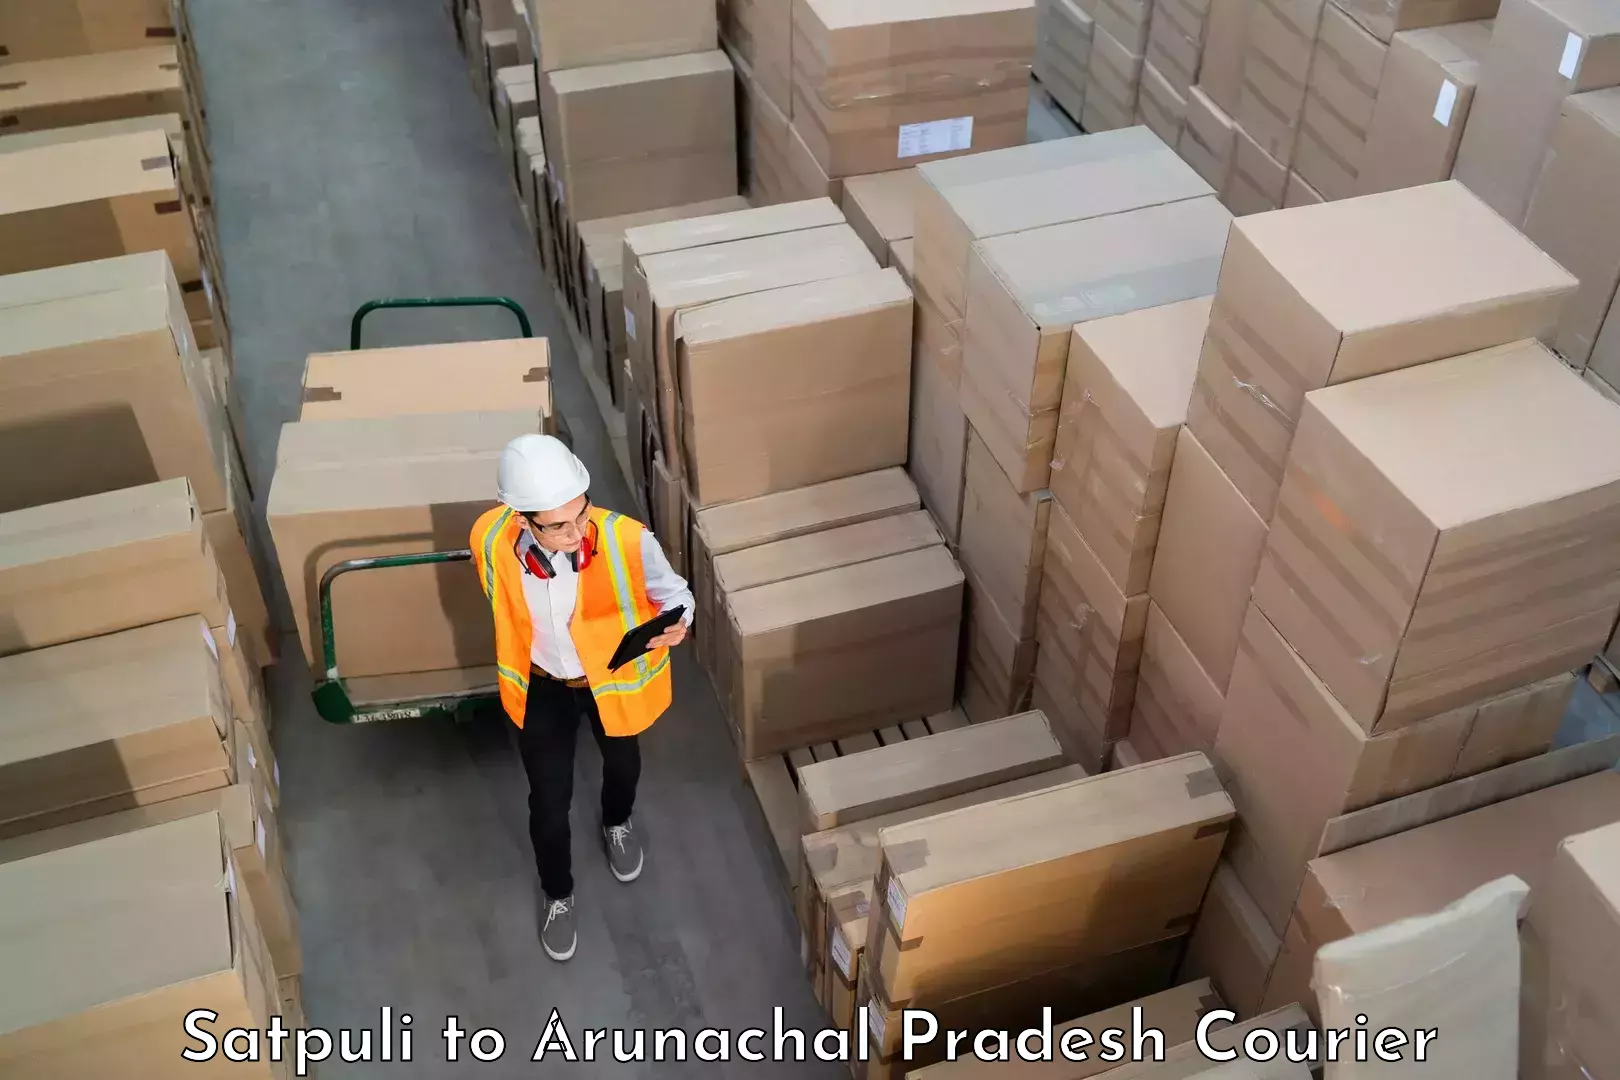 Automated luggage transport Satpuli to Arunachal Pradesh